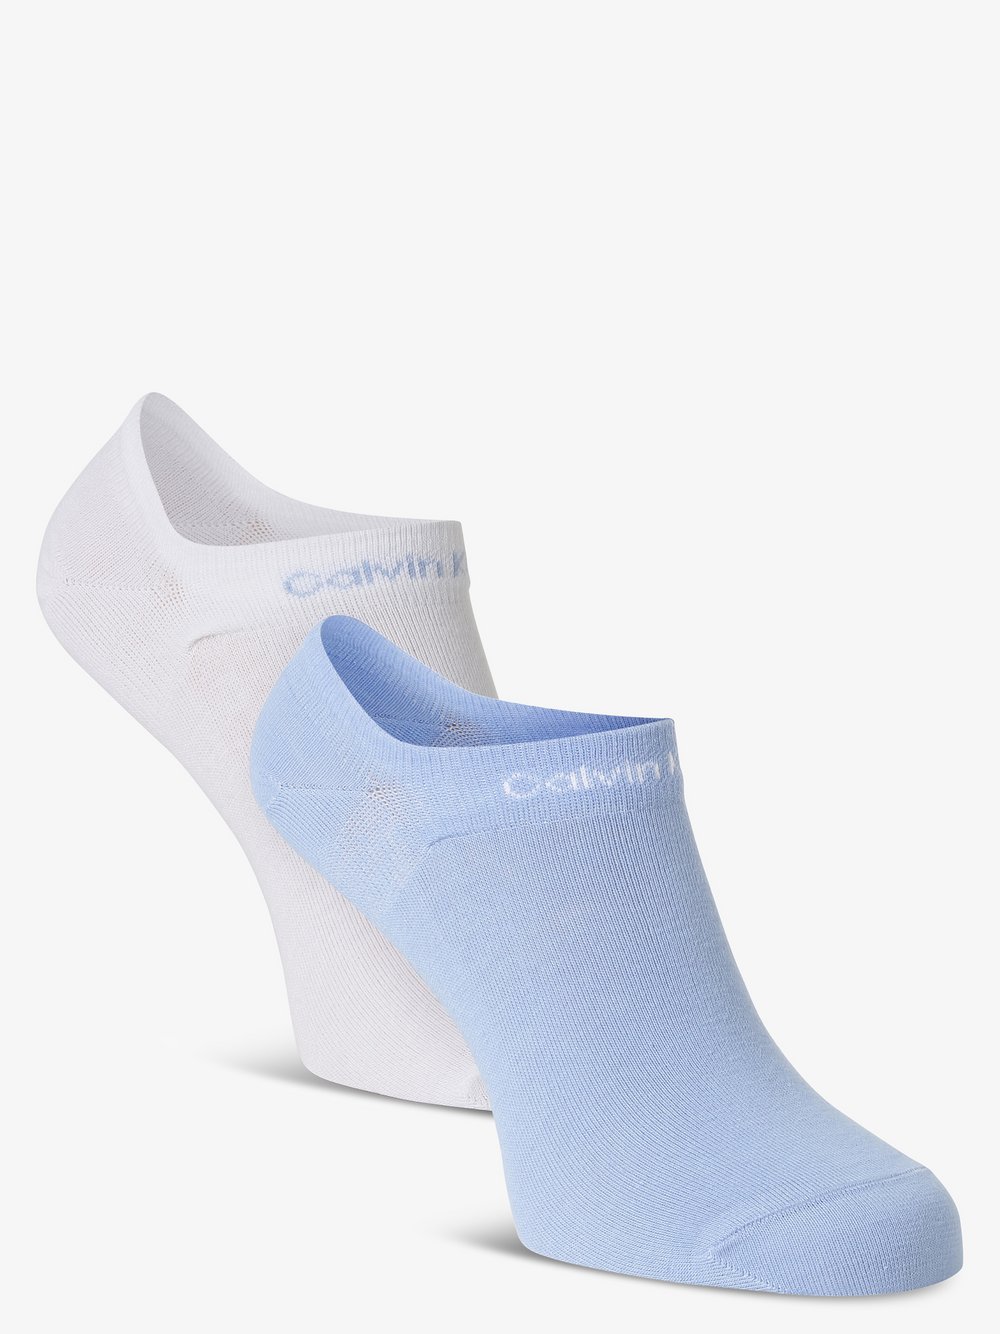 Calvin Klein - Damskie skarpety do obuwia sportowego pakowane po 2 szt., niebieski|biały